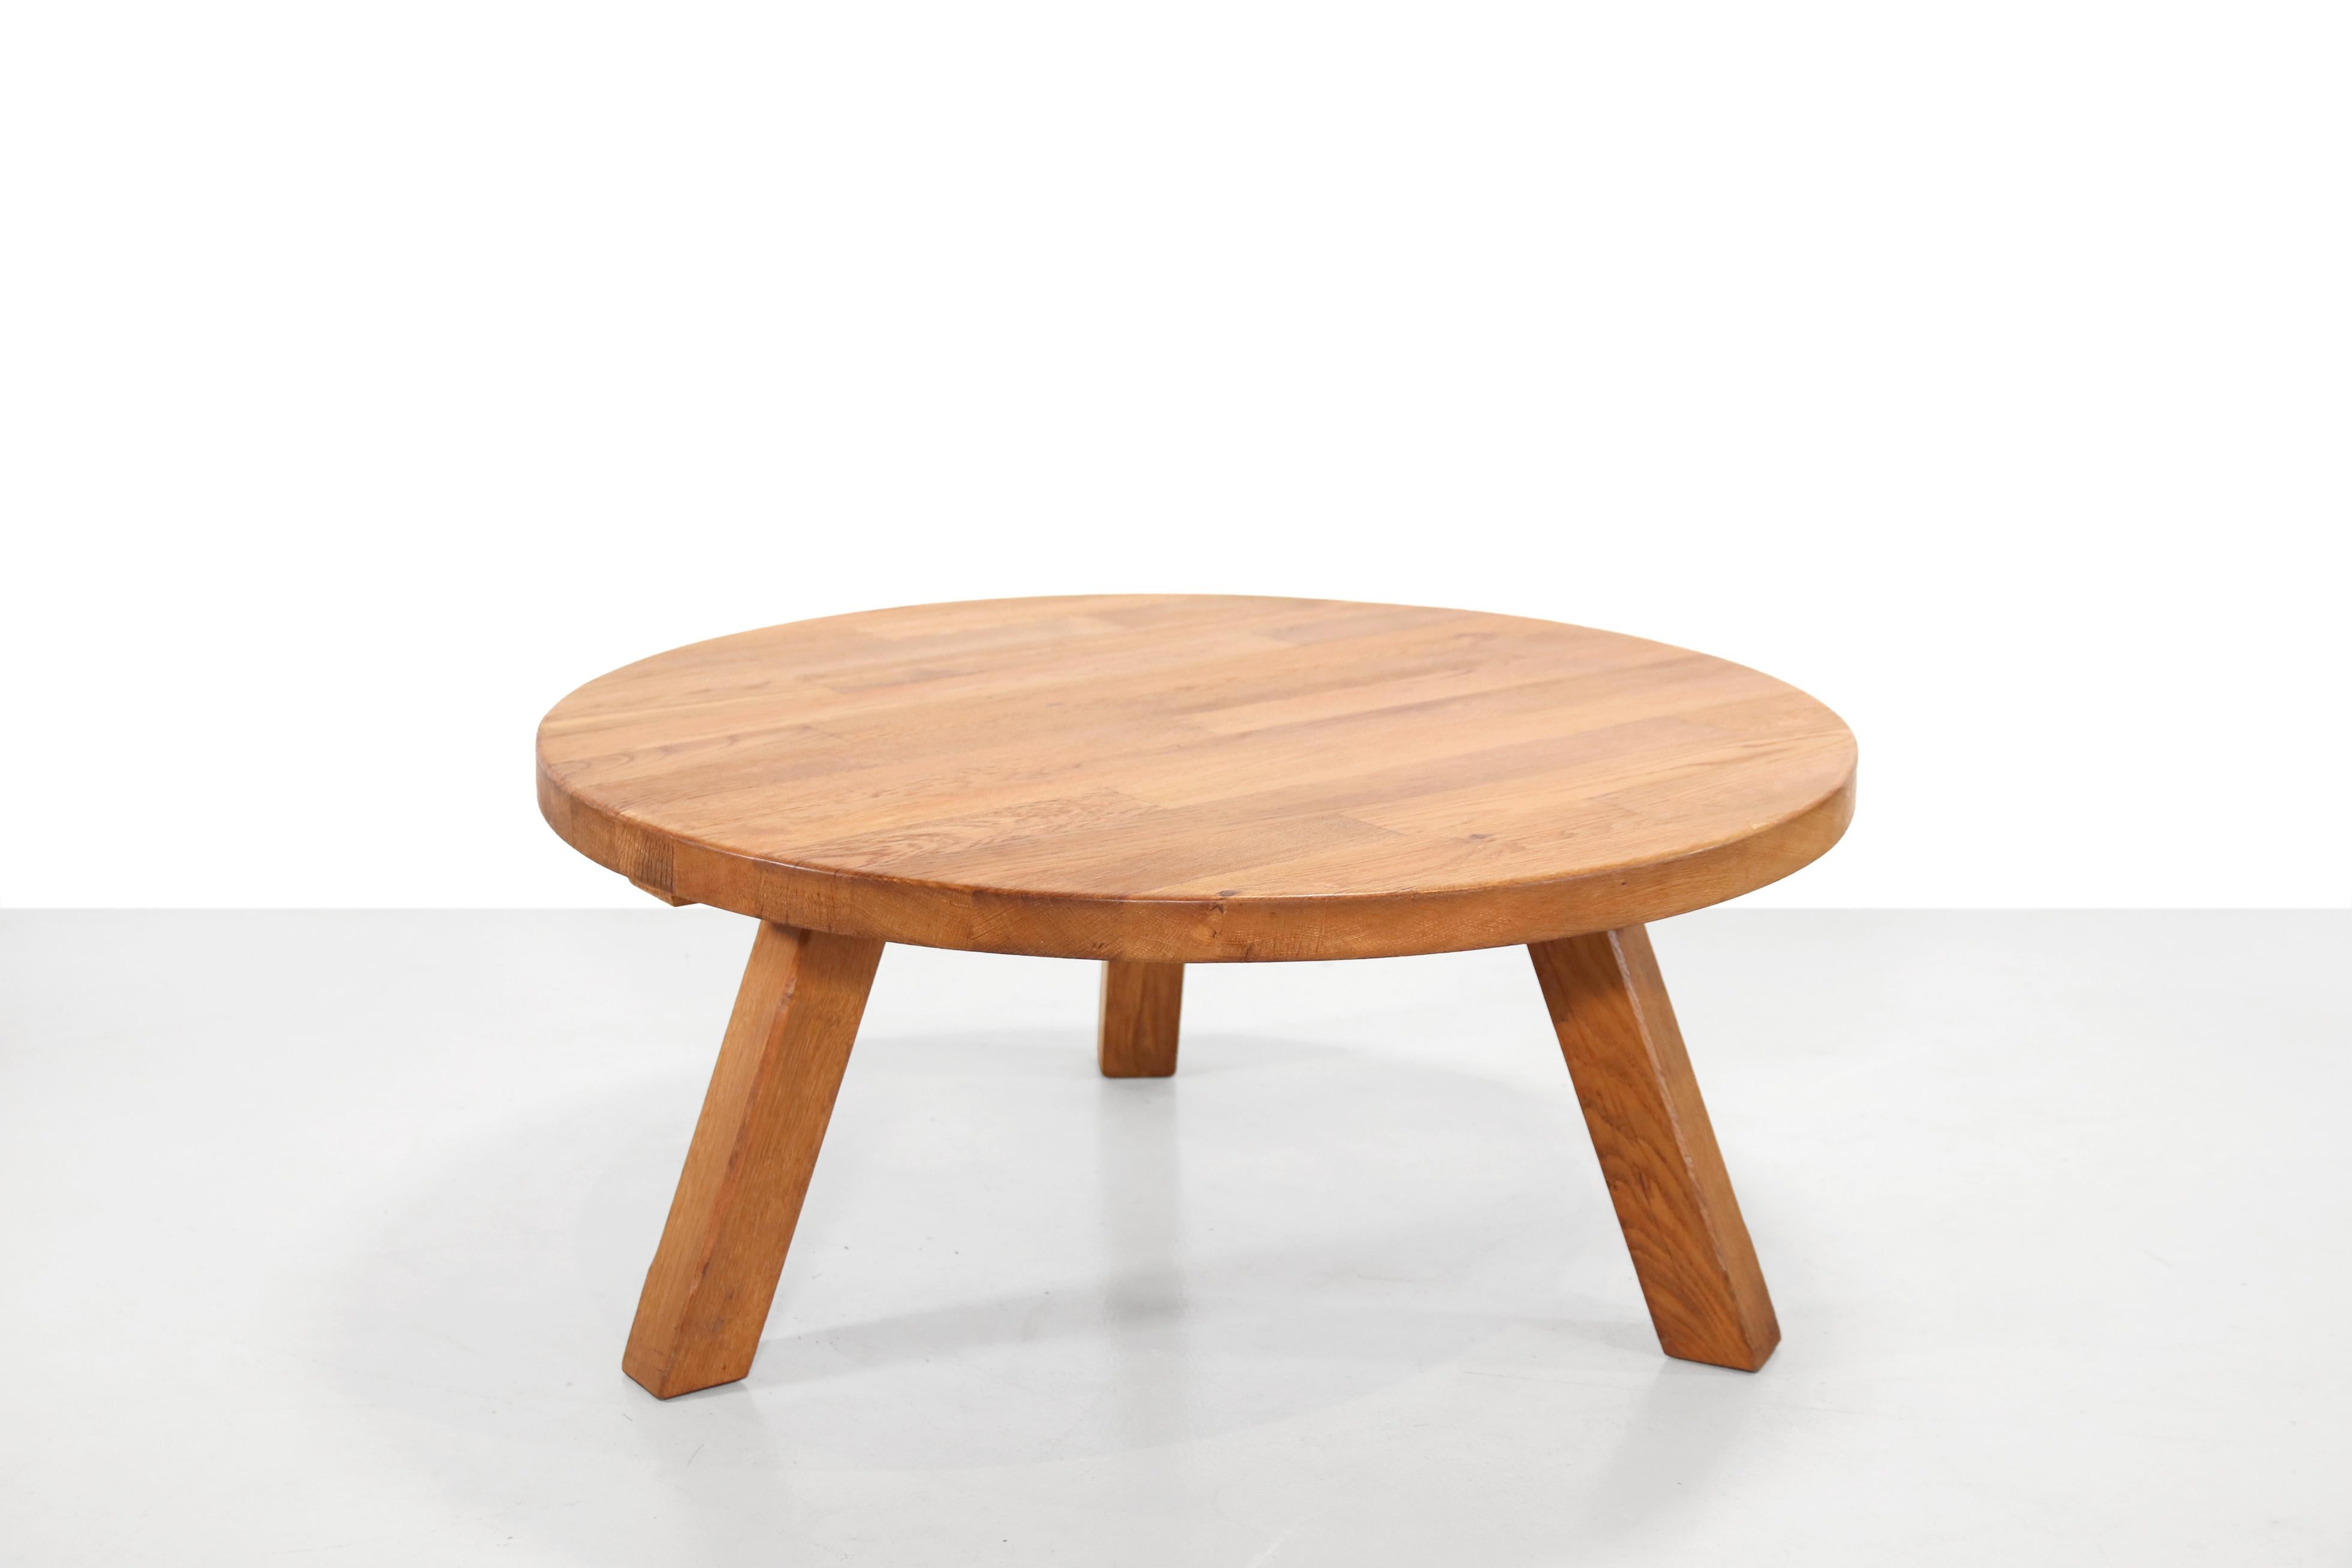 Table basse ronde brutaliste. Fabriqué de manière traditionnelle en bois de chêne massif. La table repose sur trois pieds et a été fabriquée par Meubelfabriek Oisterwijk. Ce fabricant est connu pour son artisanat néerlandais de haute qualité. La